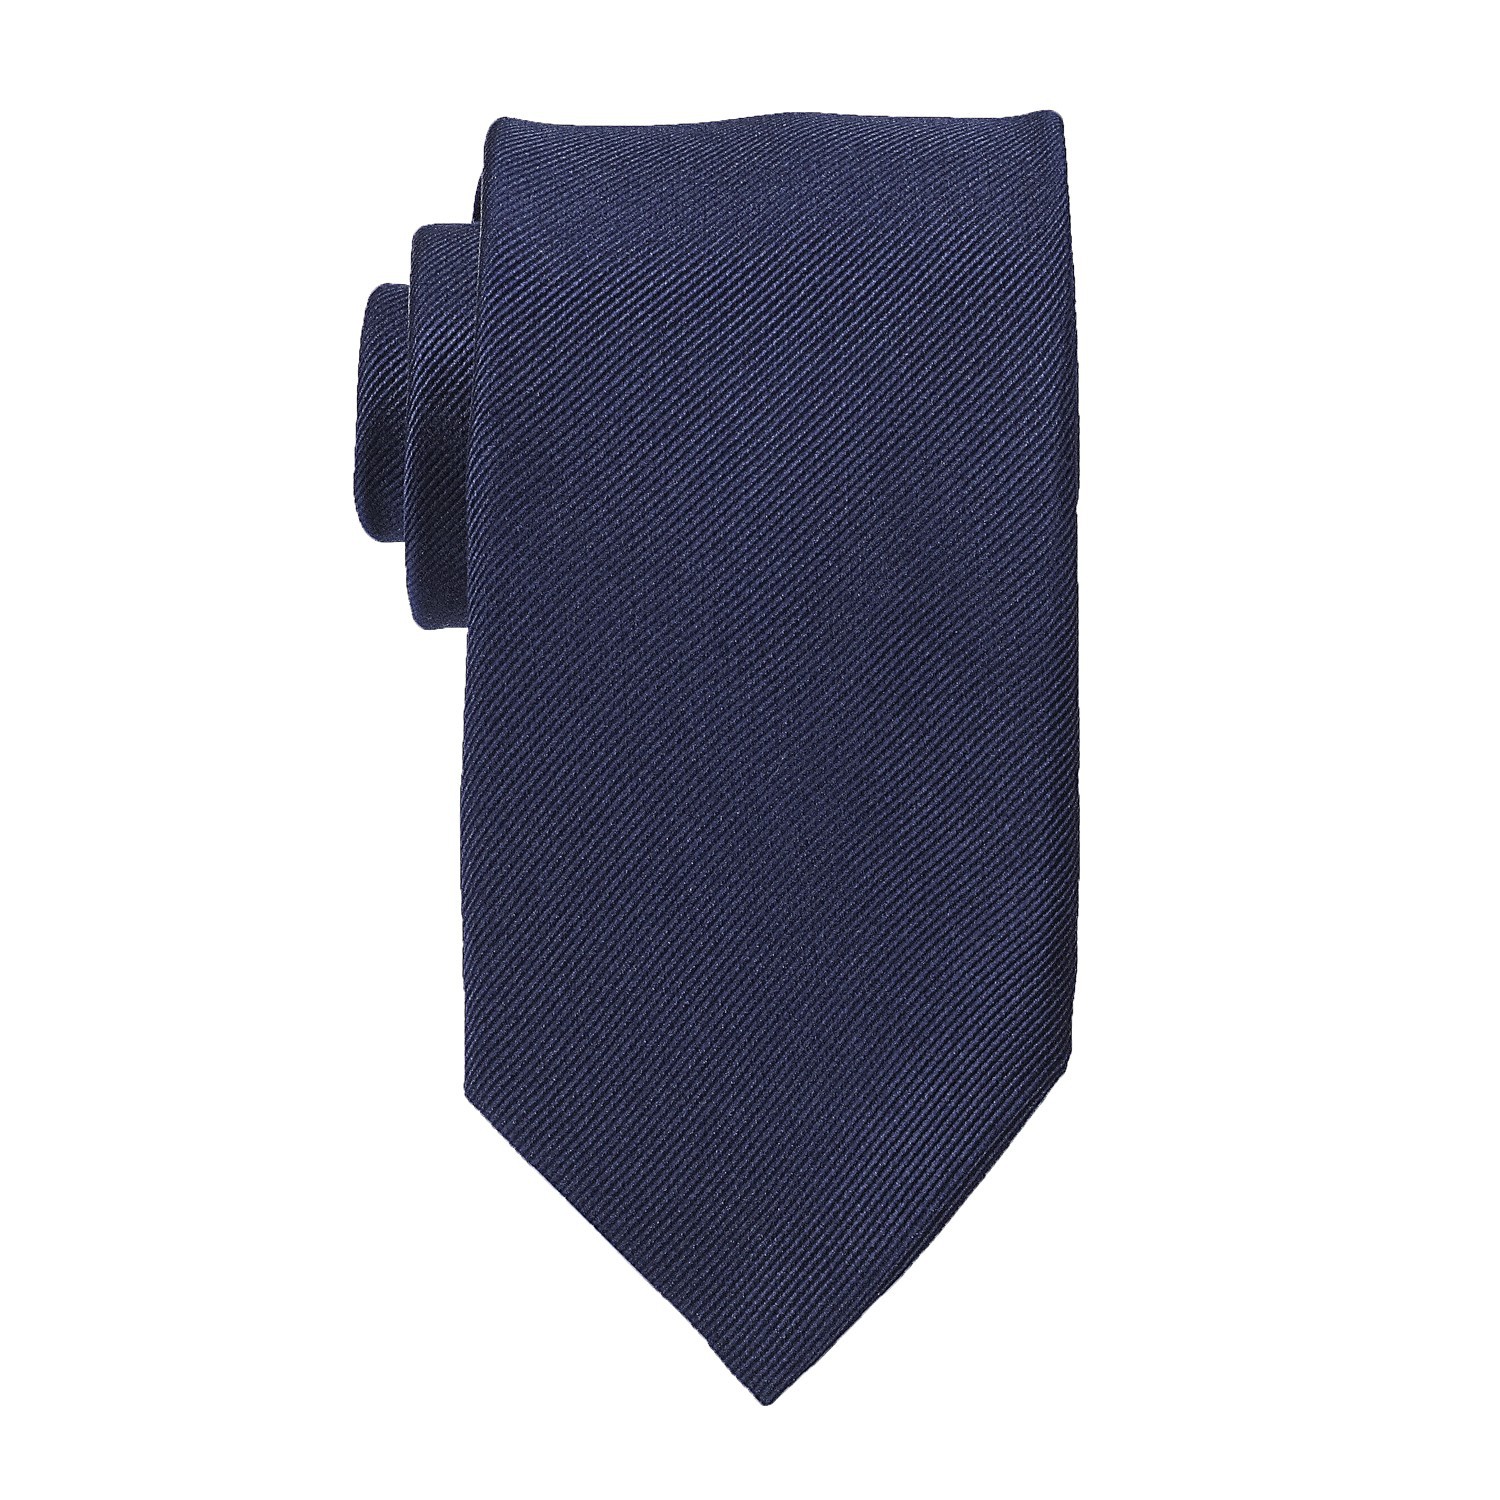 Cravate bleu foncé en soie grandes tailles de Ploenes